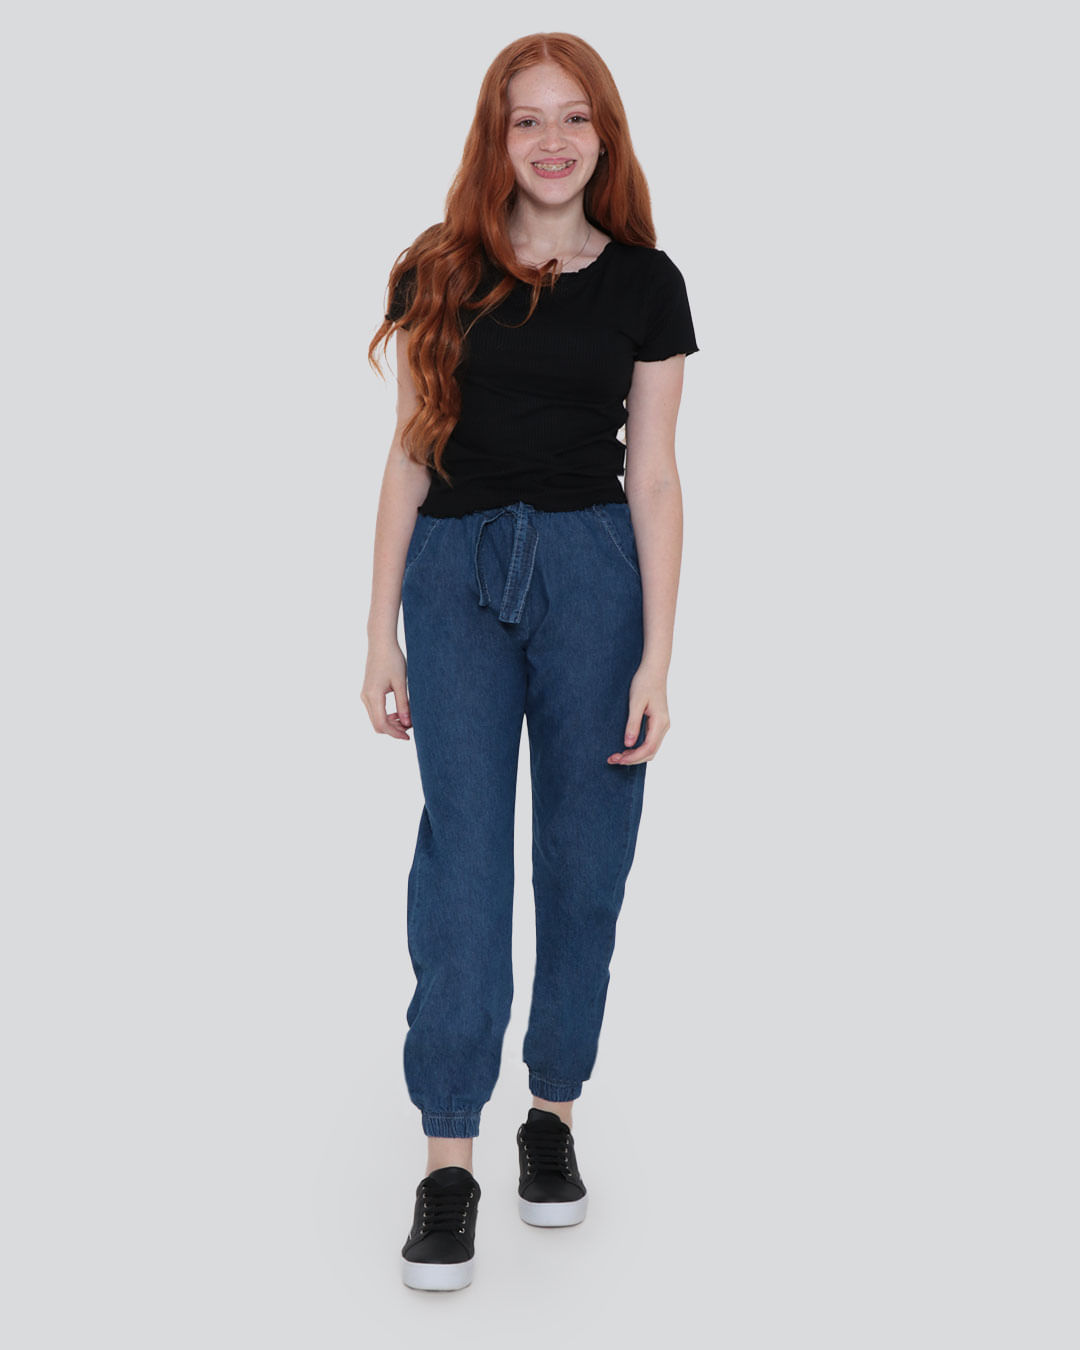 Calca-Jeans-Clochard-Jogger-Juvenil-Azul-Medio